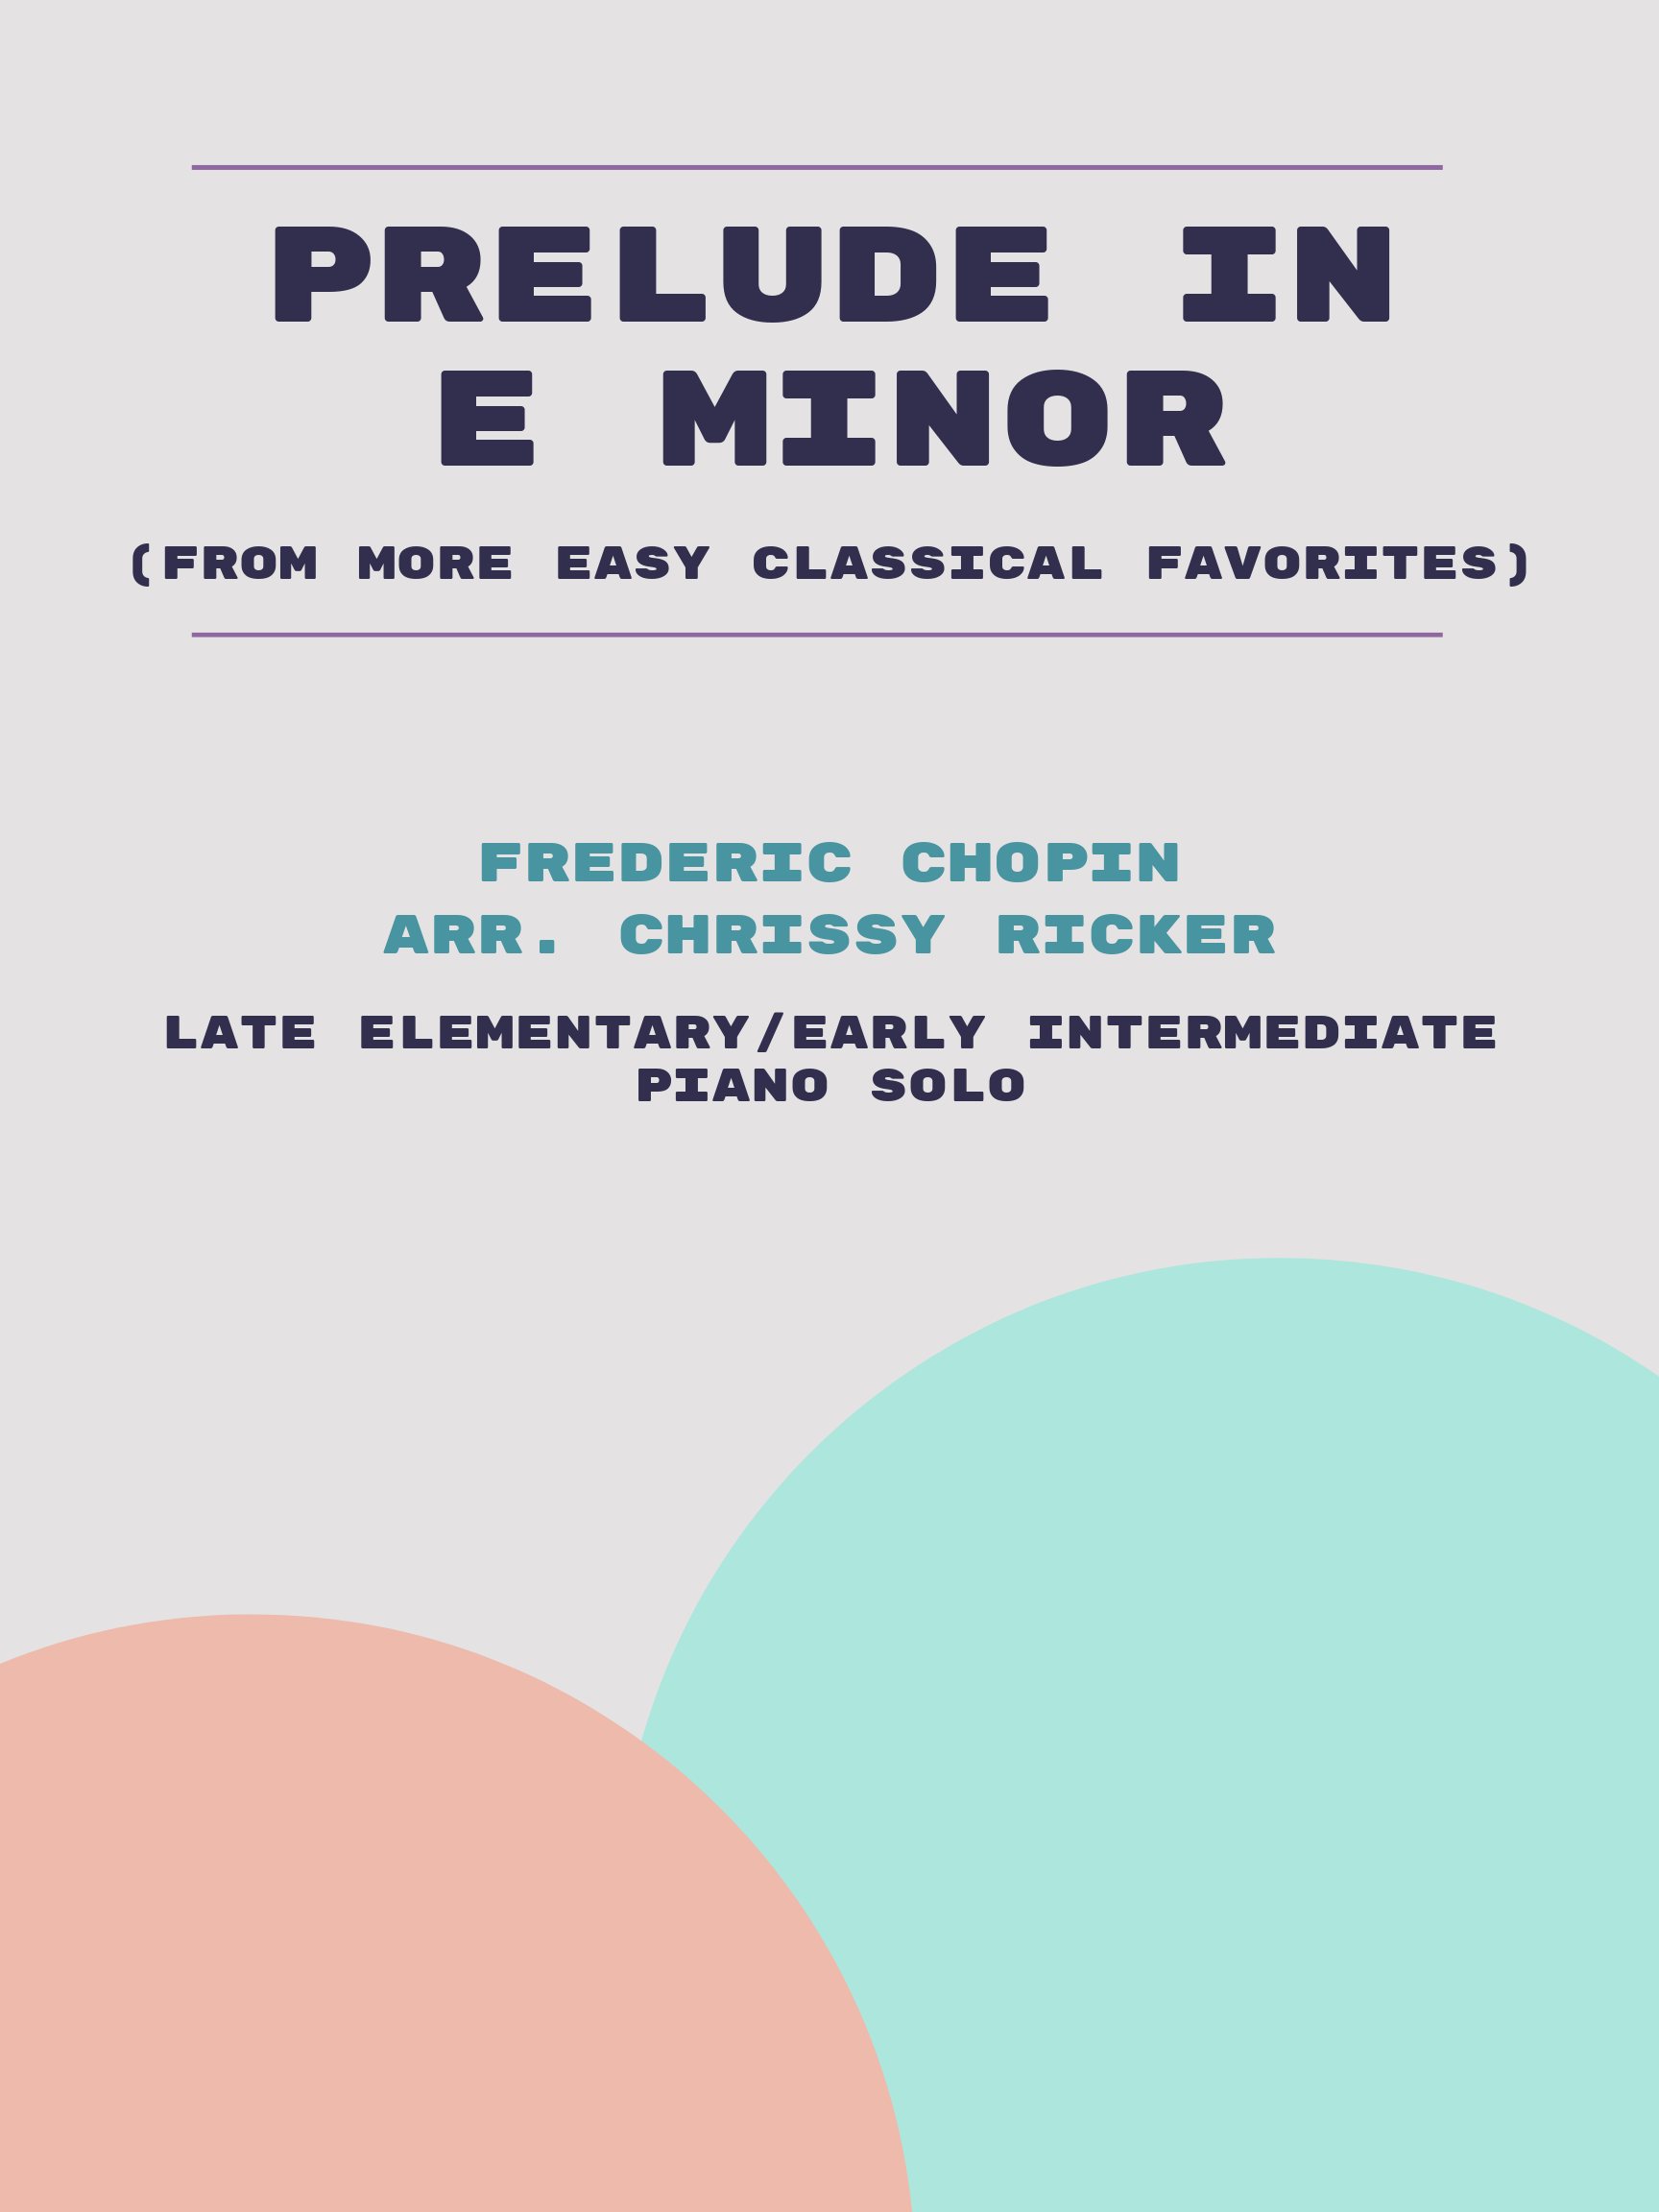 Prelude in E Minor by Frederic Chopin